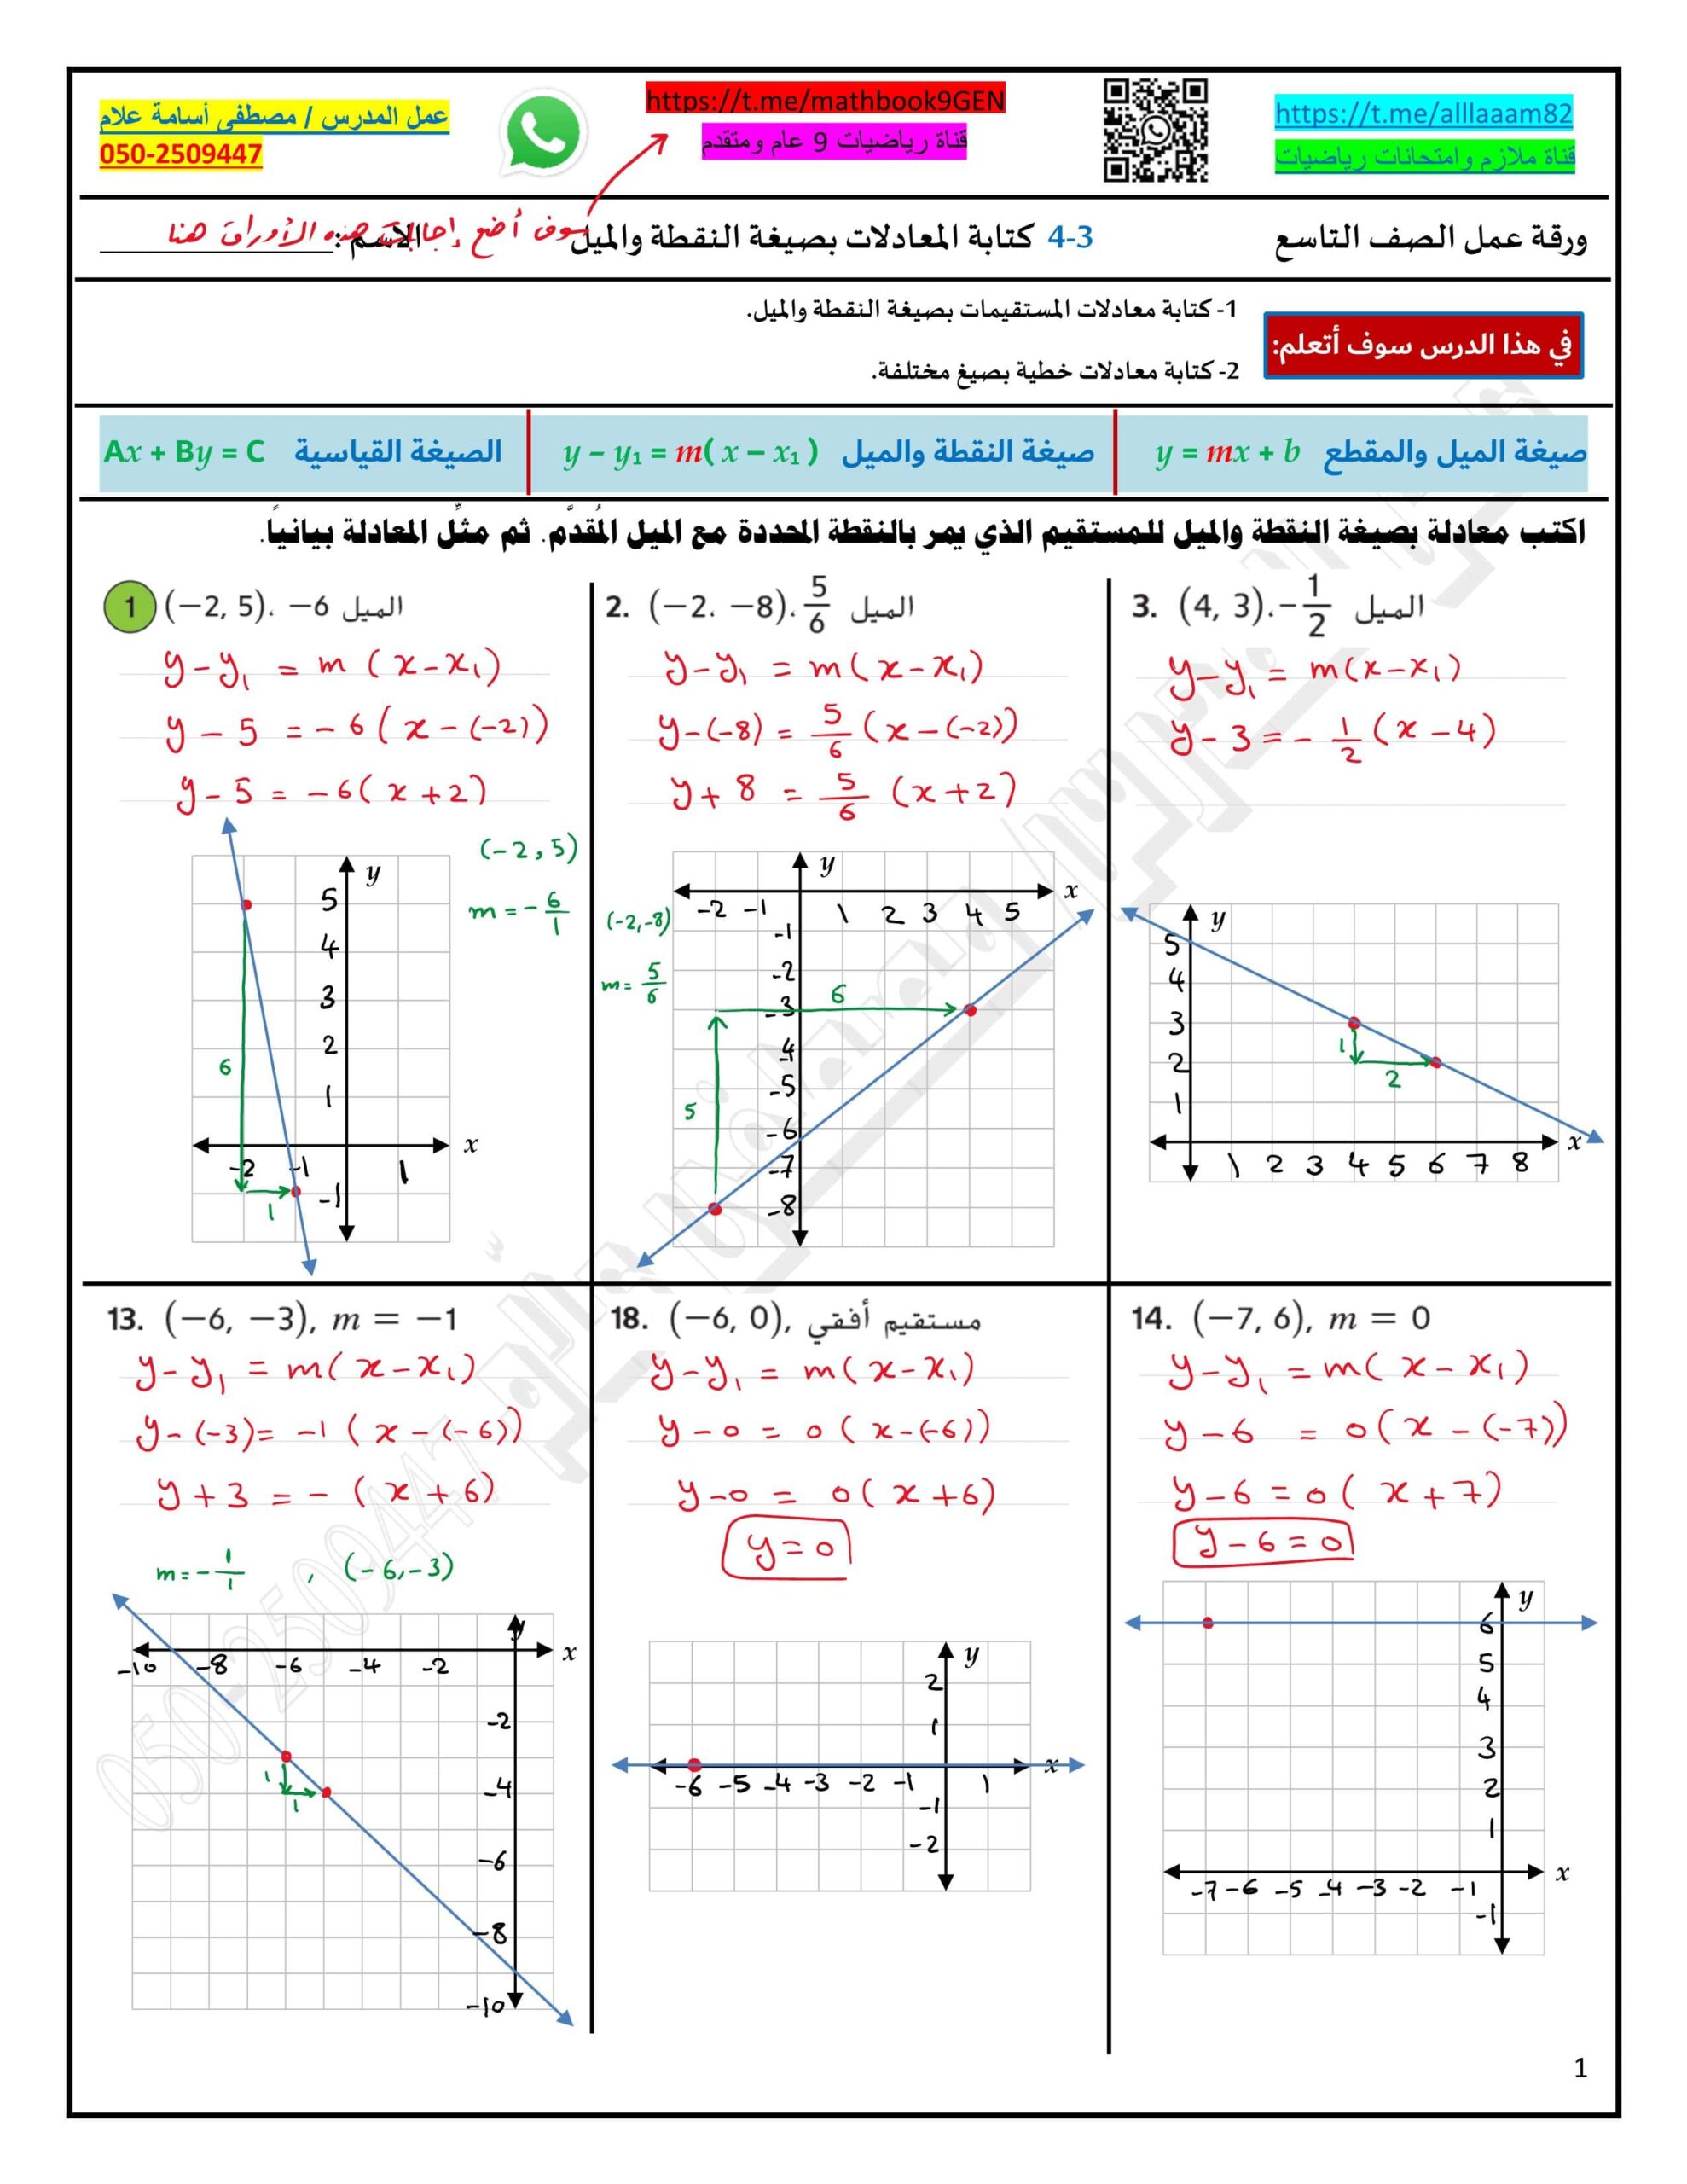 حل ورقة عمل درس كتابة المعادلات بصيغة النقطة والميل الرياضيات المتكاملة الصف التاسع